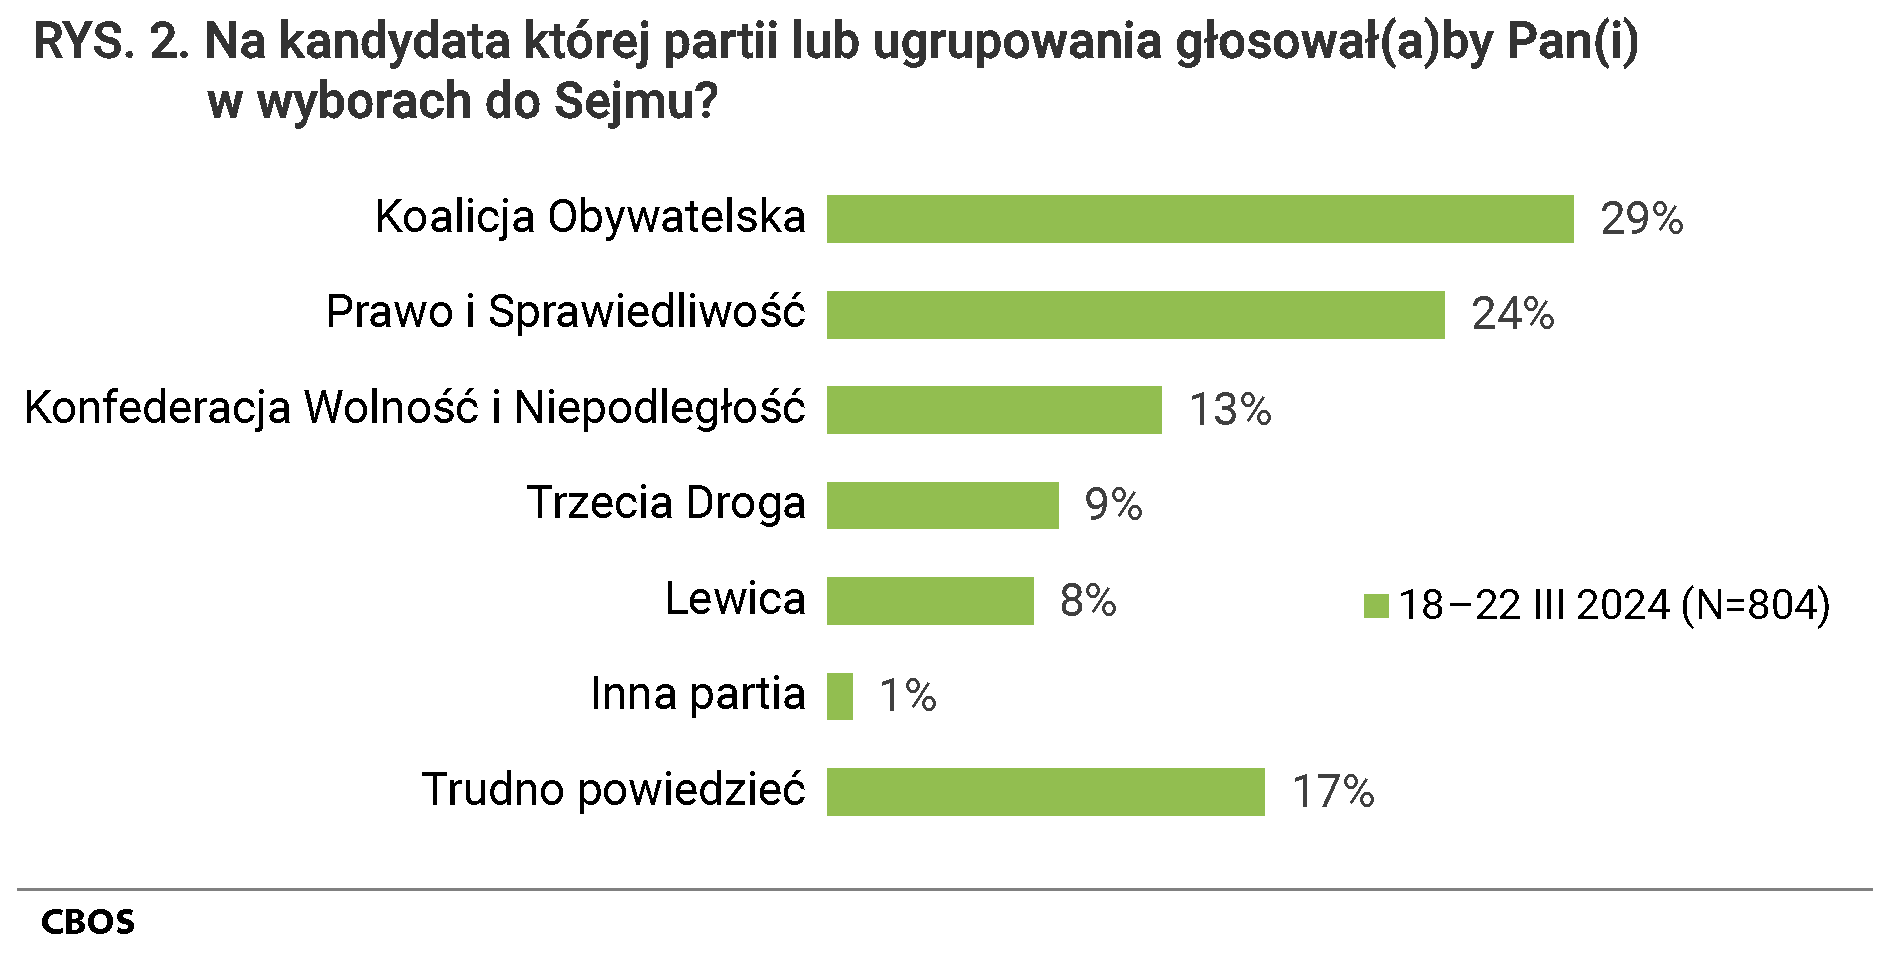 Rysunek 2 Na kandydata której partii lub ugrupowania głosował(a)by Pan(i) w wyborach do Sejmu? Koalicja Obywatelska - 29%, Prawo i Sprawiedliwość - 24%, Konfederacja Wolność i Niepodległość - 13%, Trzecia Droga - 9%, Lewica - 8%, Inna partia - 1%, Trudno powiedzieć - 17%